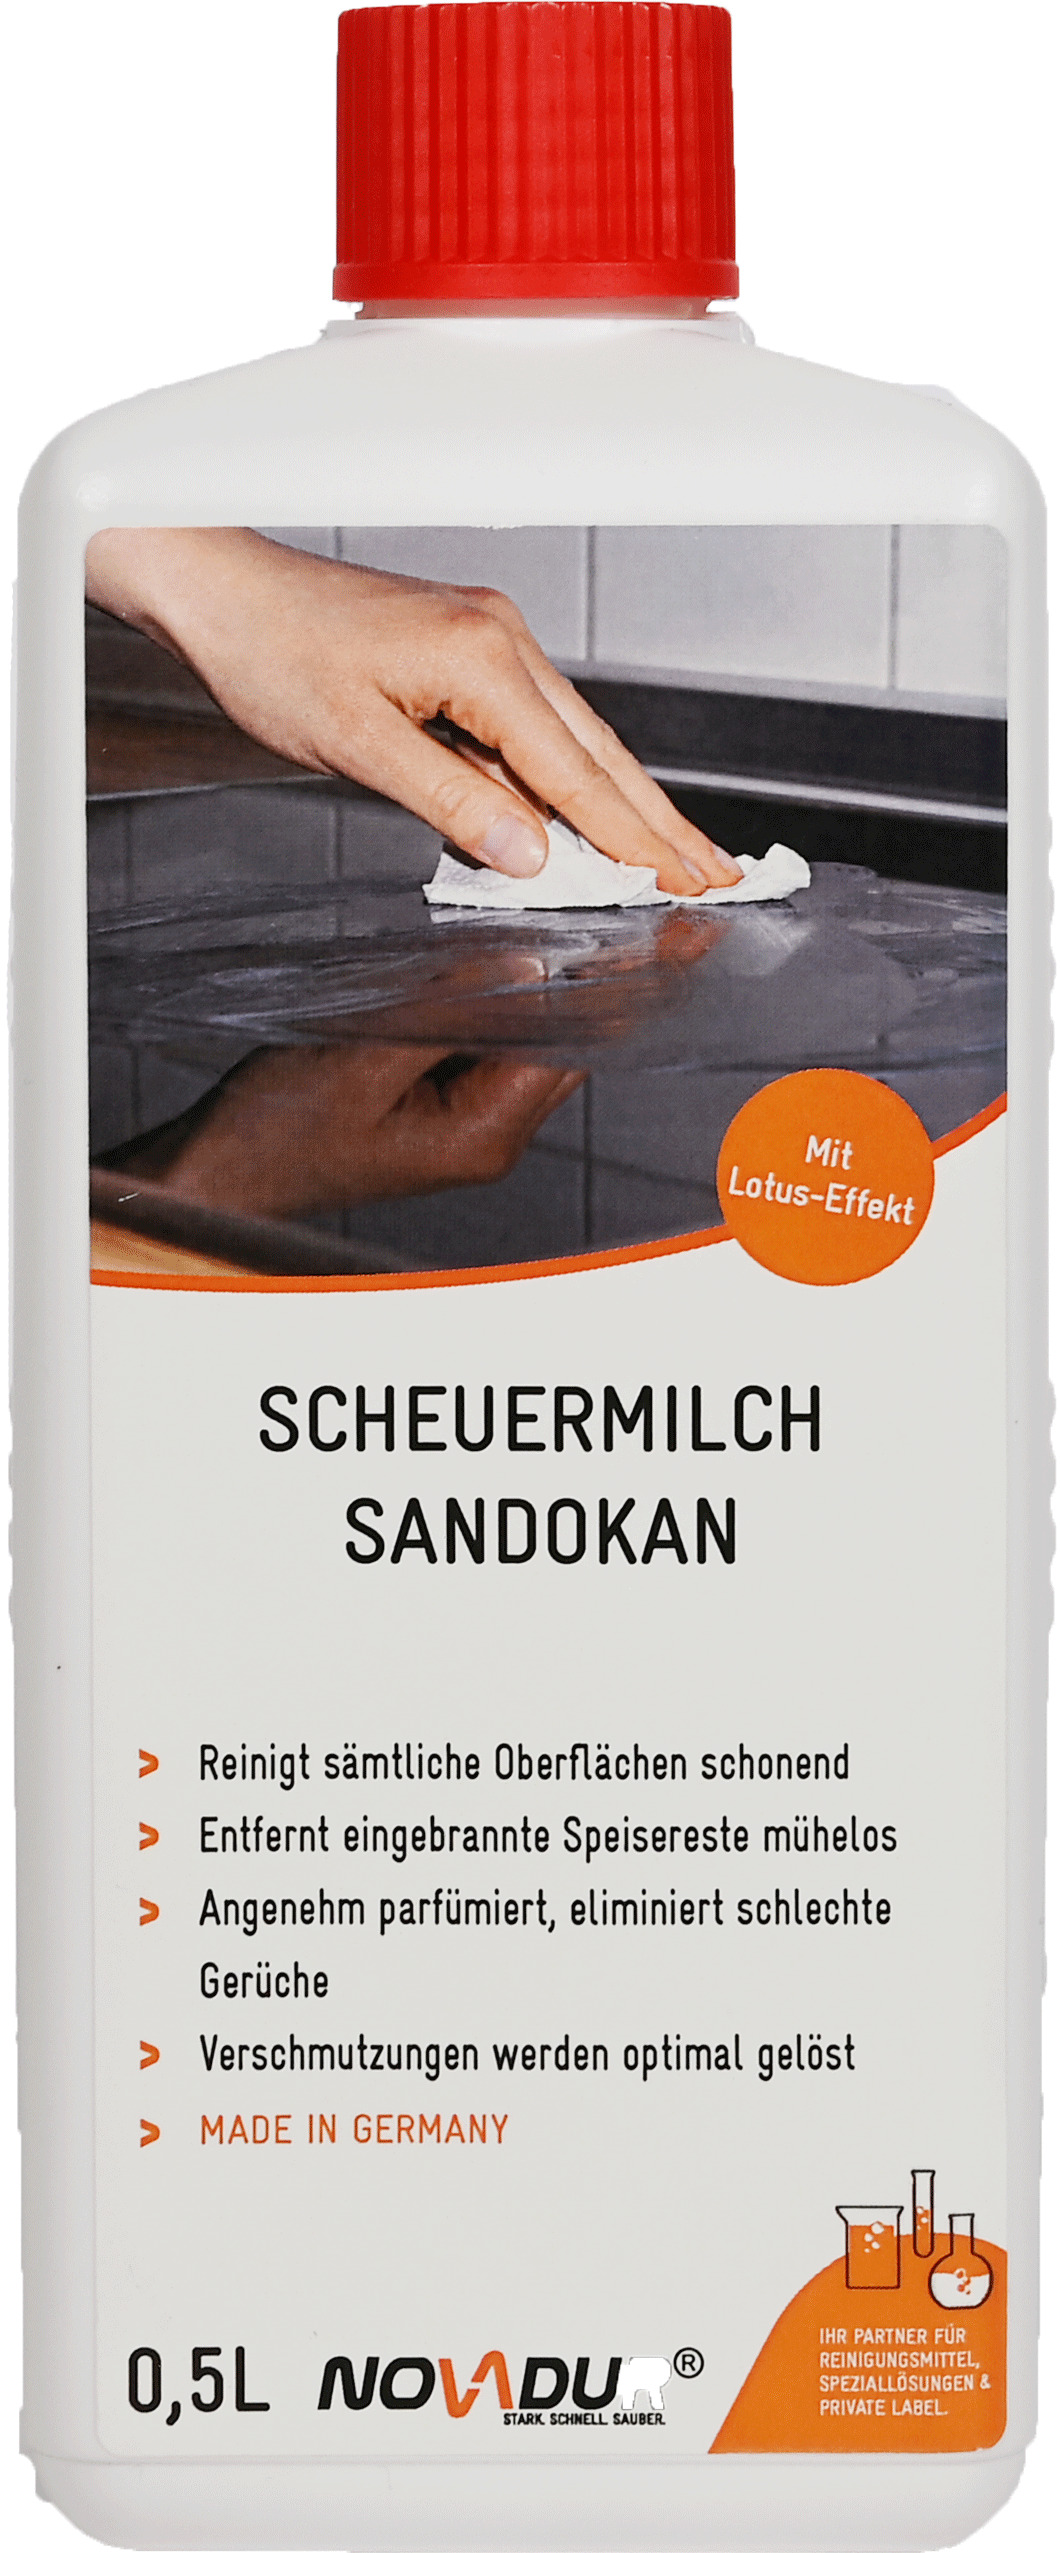 Scheuermilch Sandokan